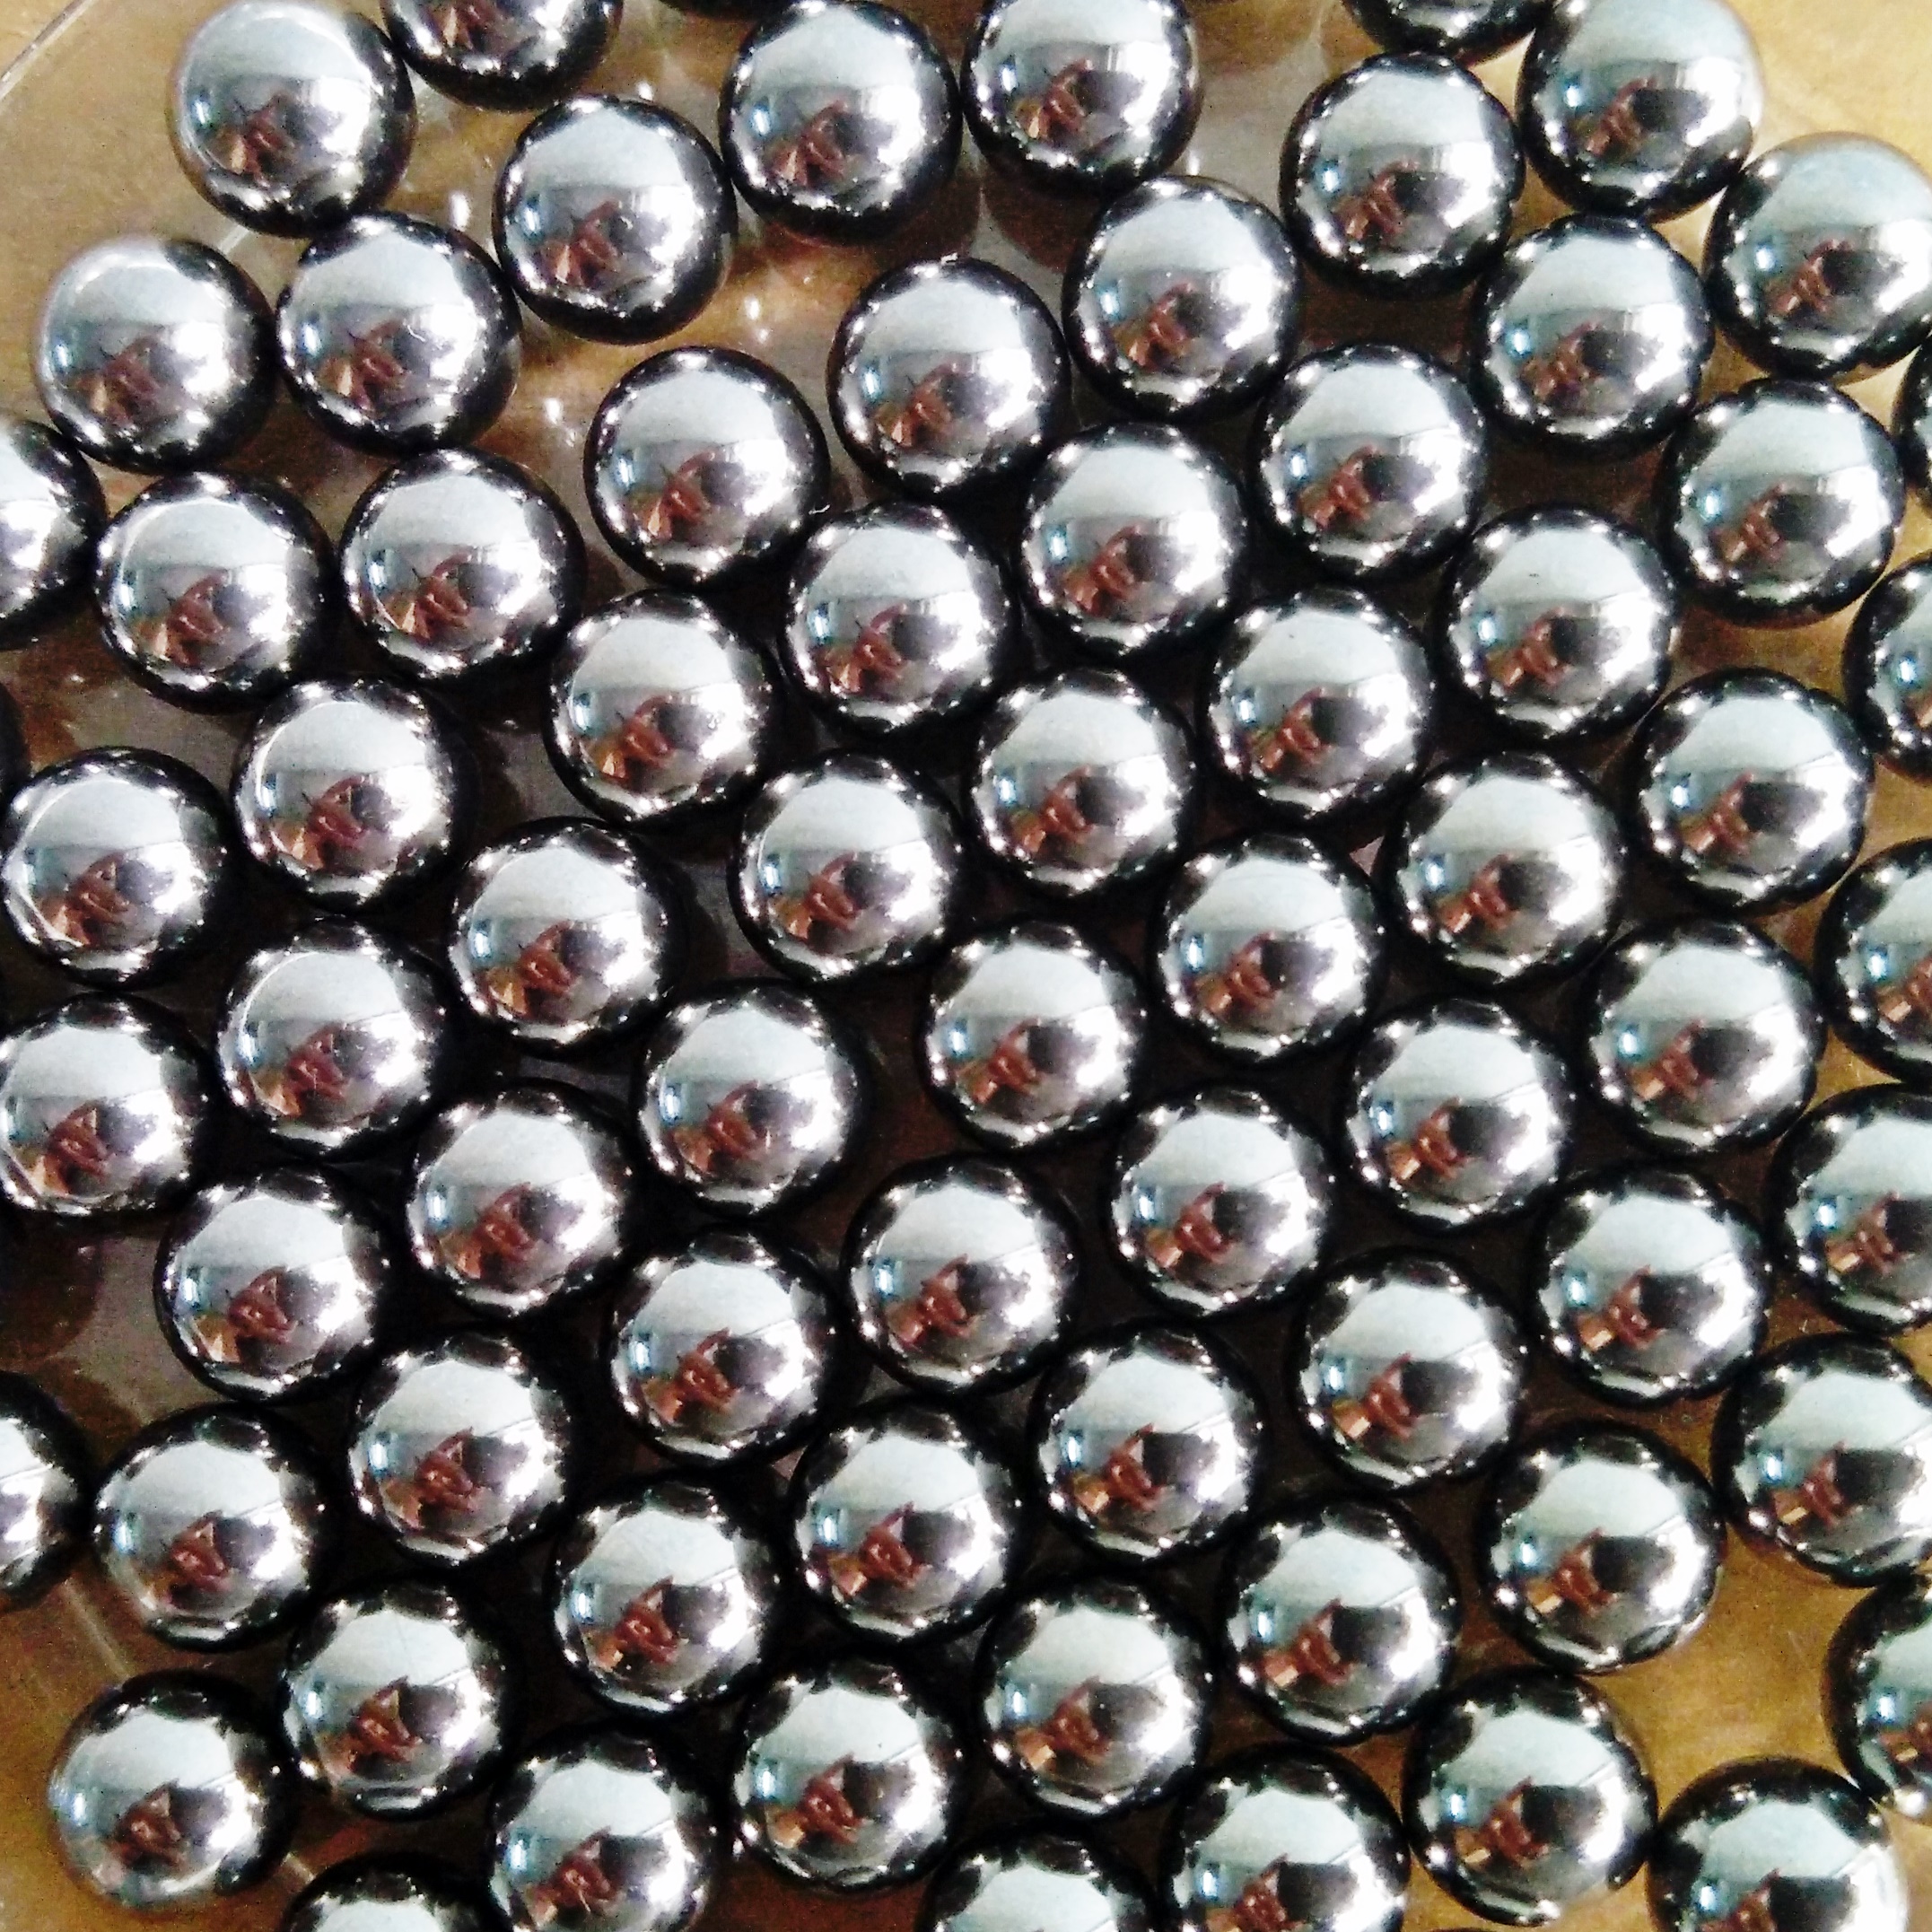 Tangeseiki Bearing Balls 5/32" (Grade 100 ) Pack of 200 balls